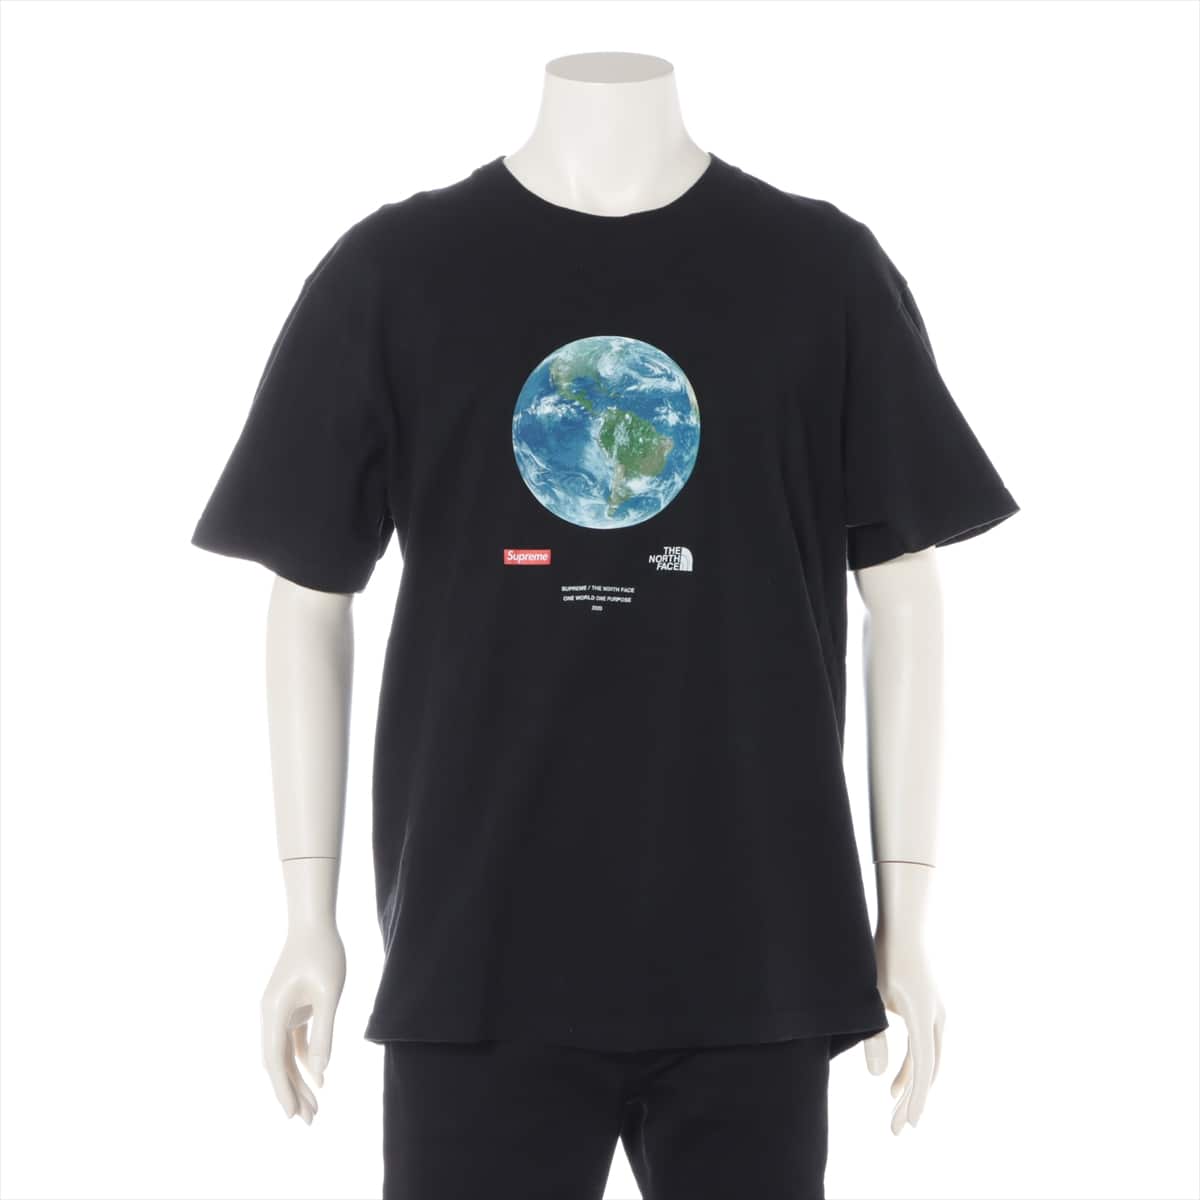 シュプリーム×ノースフェイス 20SS コットン Tシャツ L メンズ ブラック  One World Tee